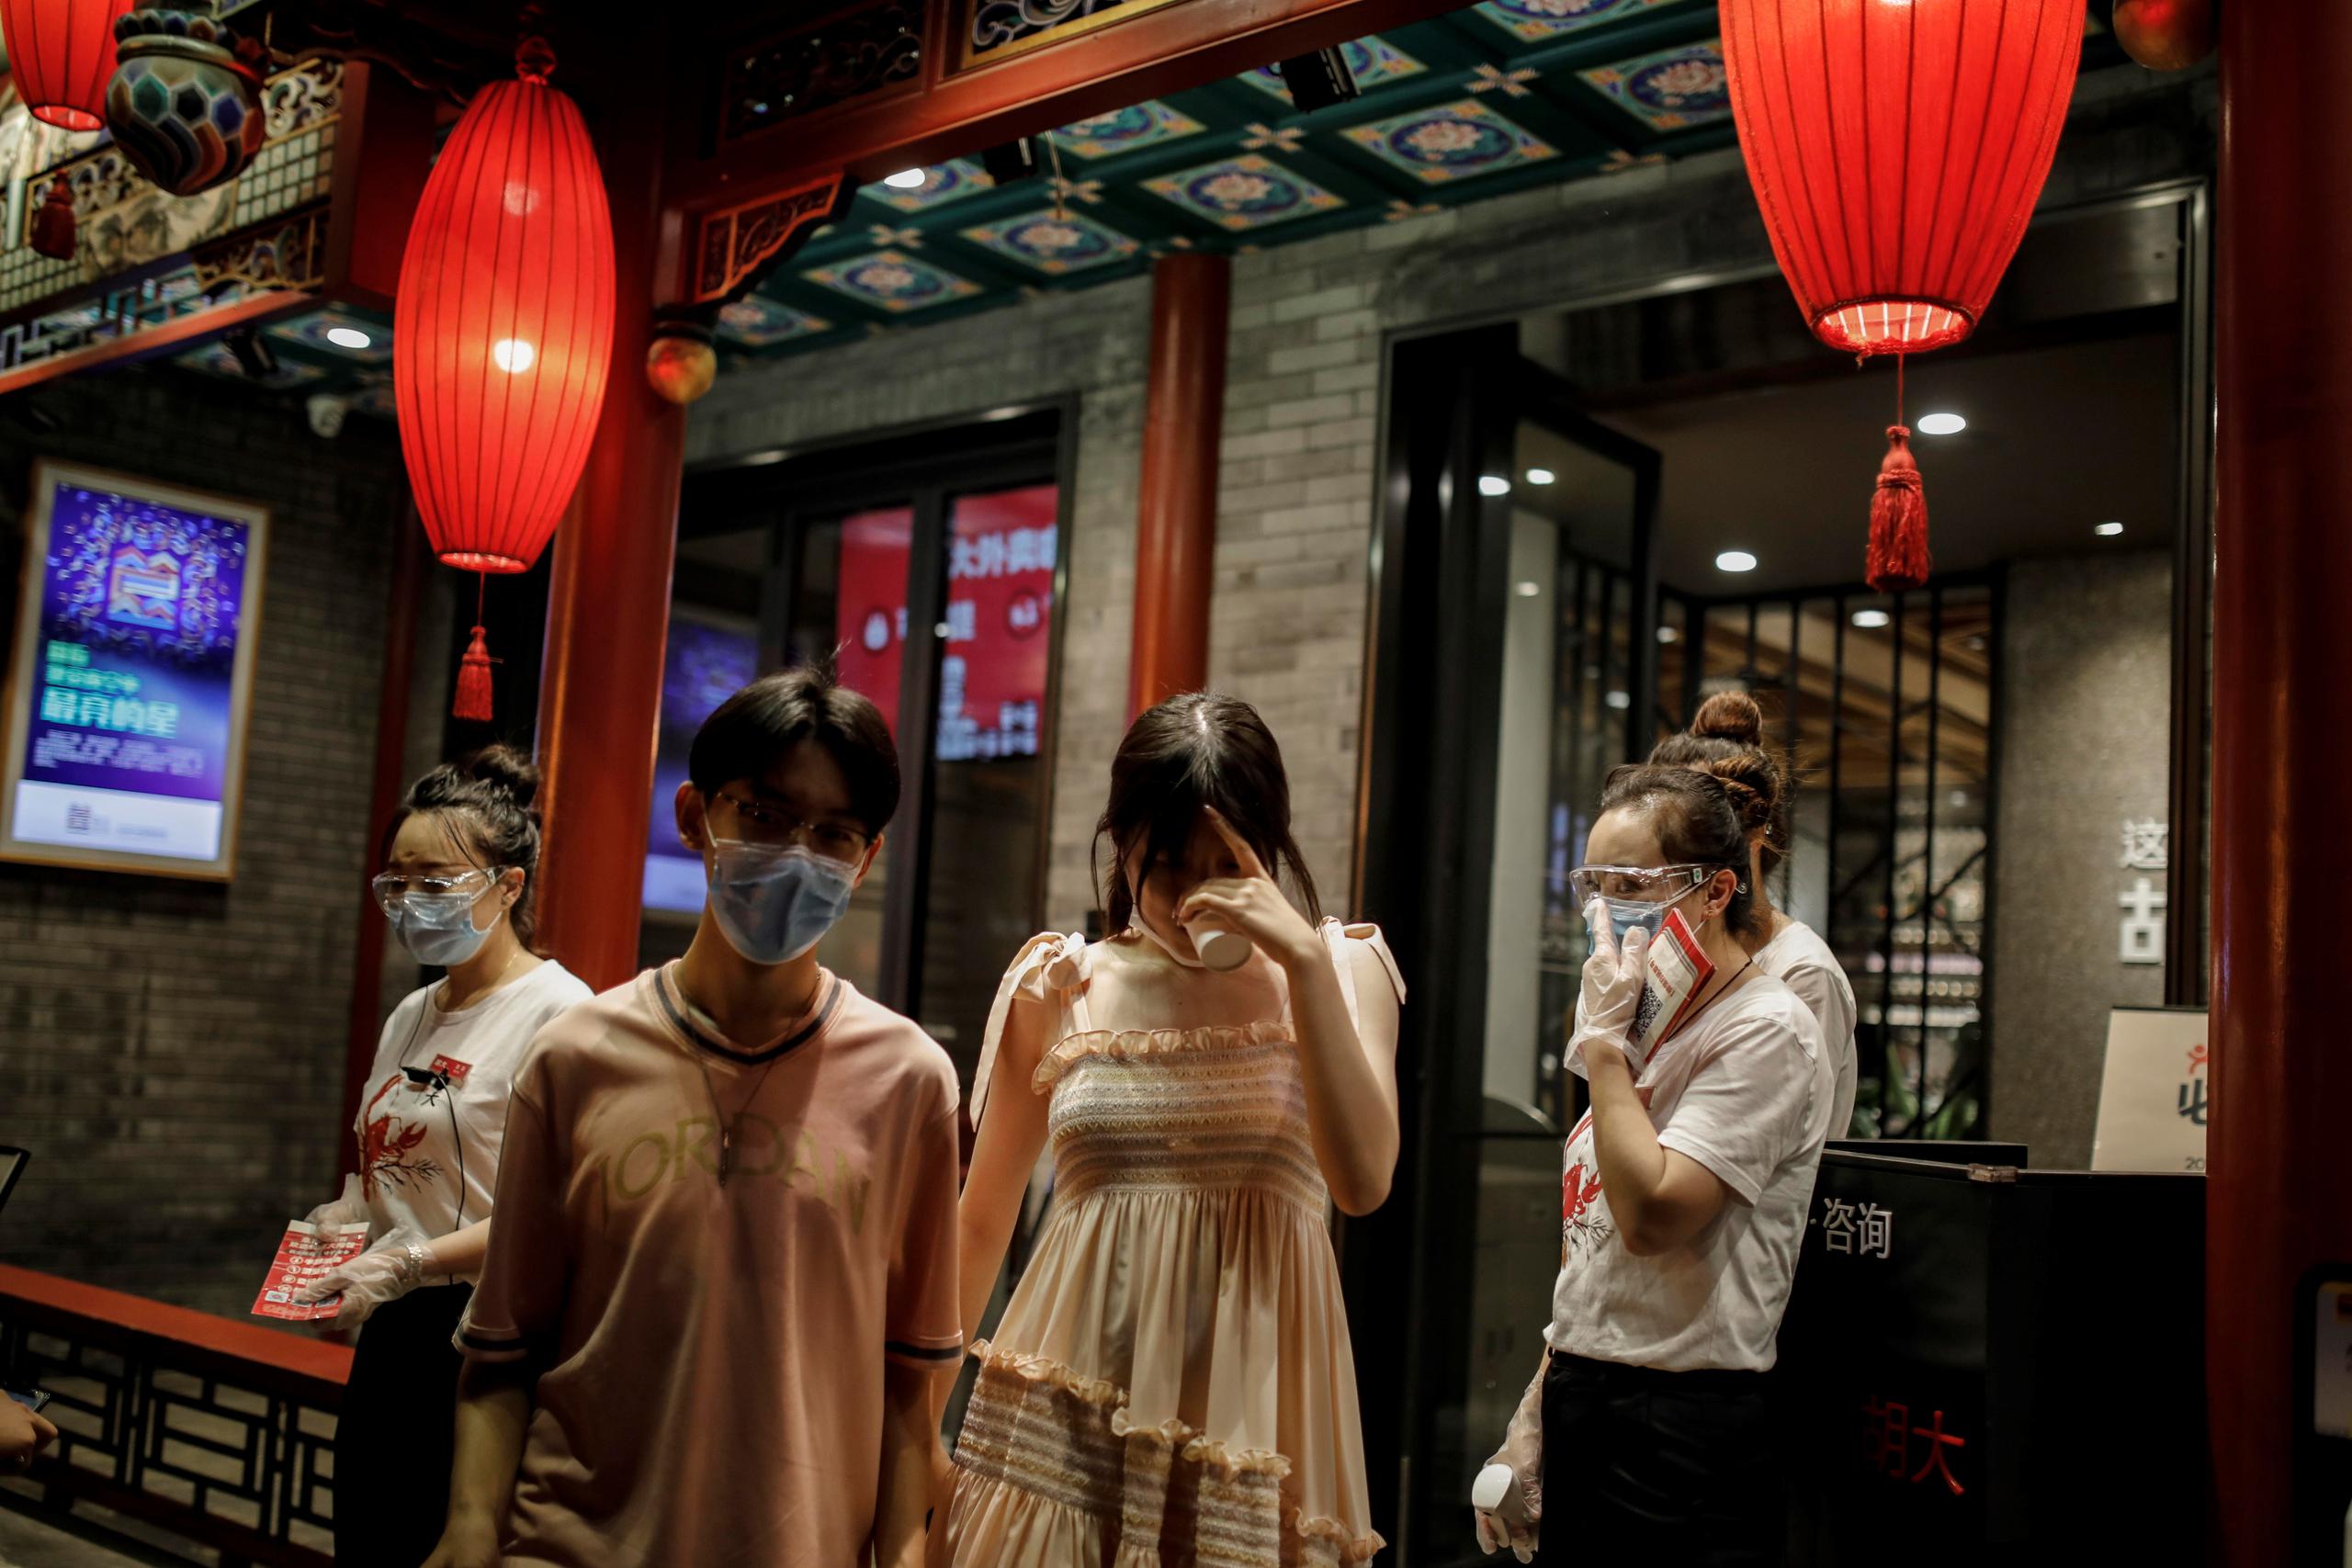 Personas con mascarillas salen de un restaurante en medio de la pandemia del coronavirus después de que se detectaran nuevos casos de COVID-19 en los últimos días en Pekín, China.